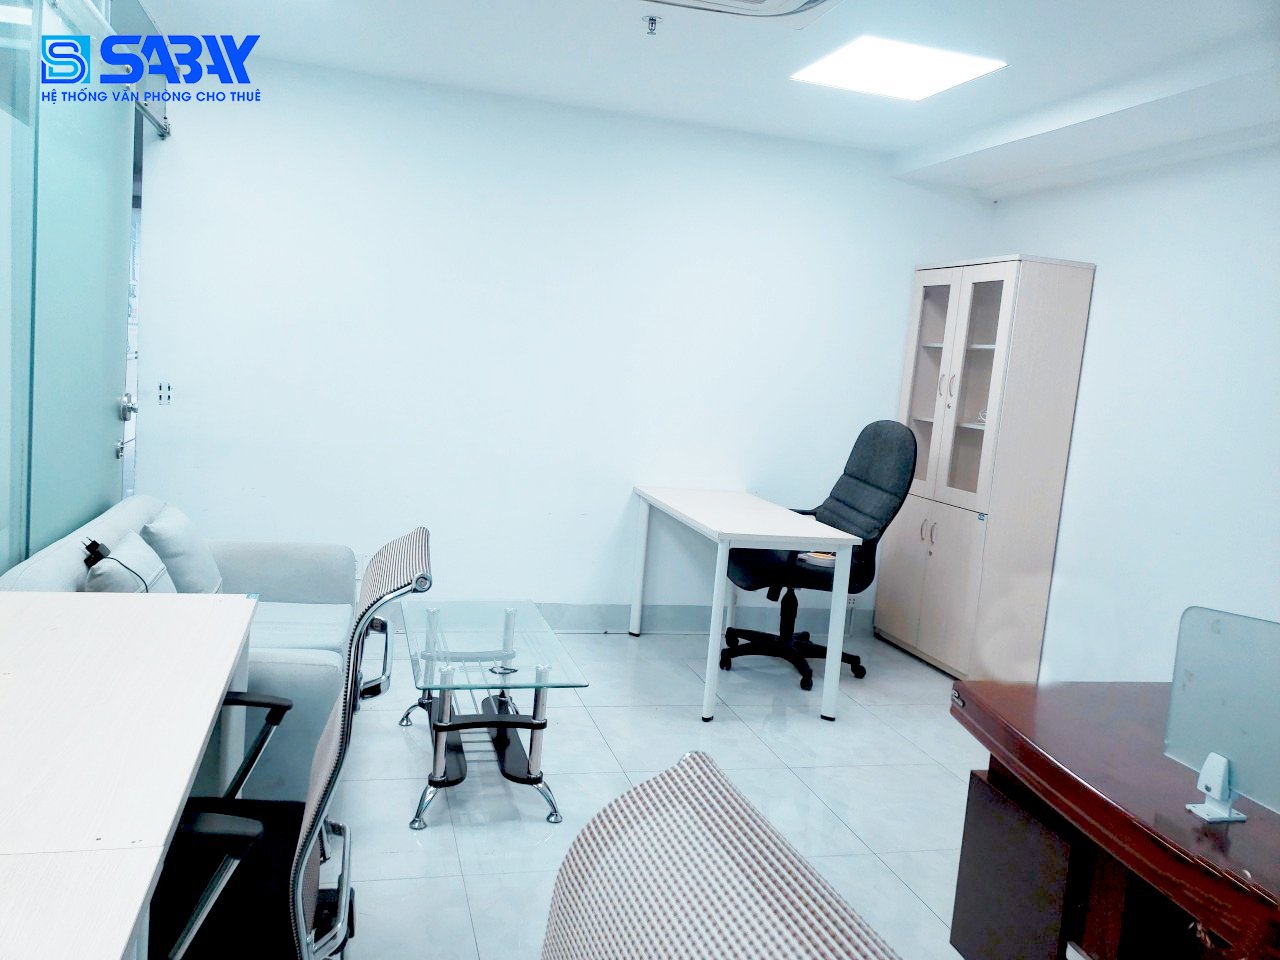 Dịch vụ cho thuê văn phòng trọn gói từ Sabay Office